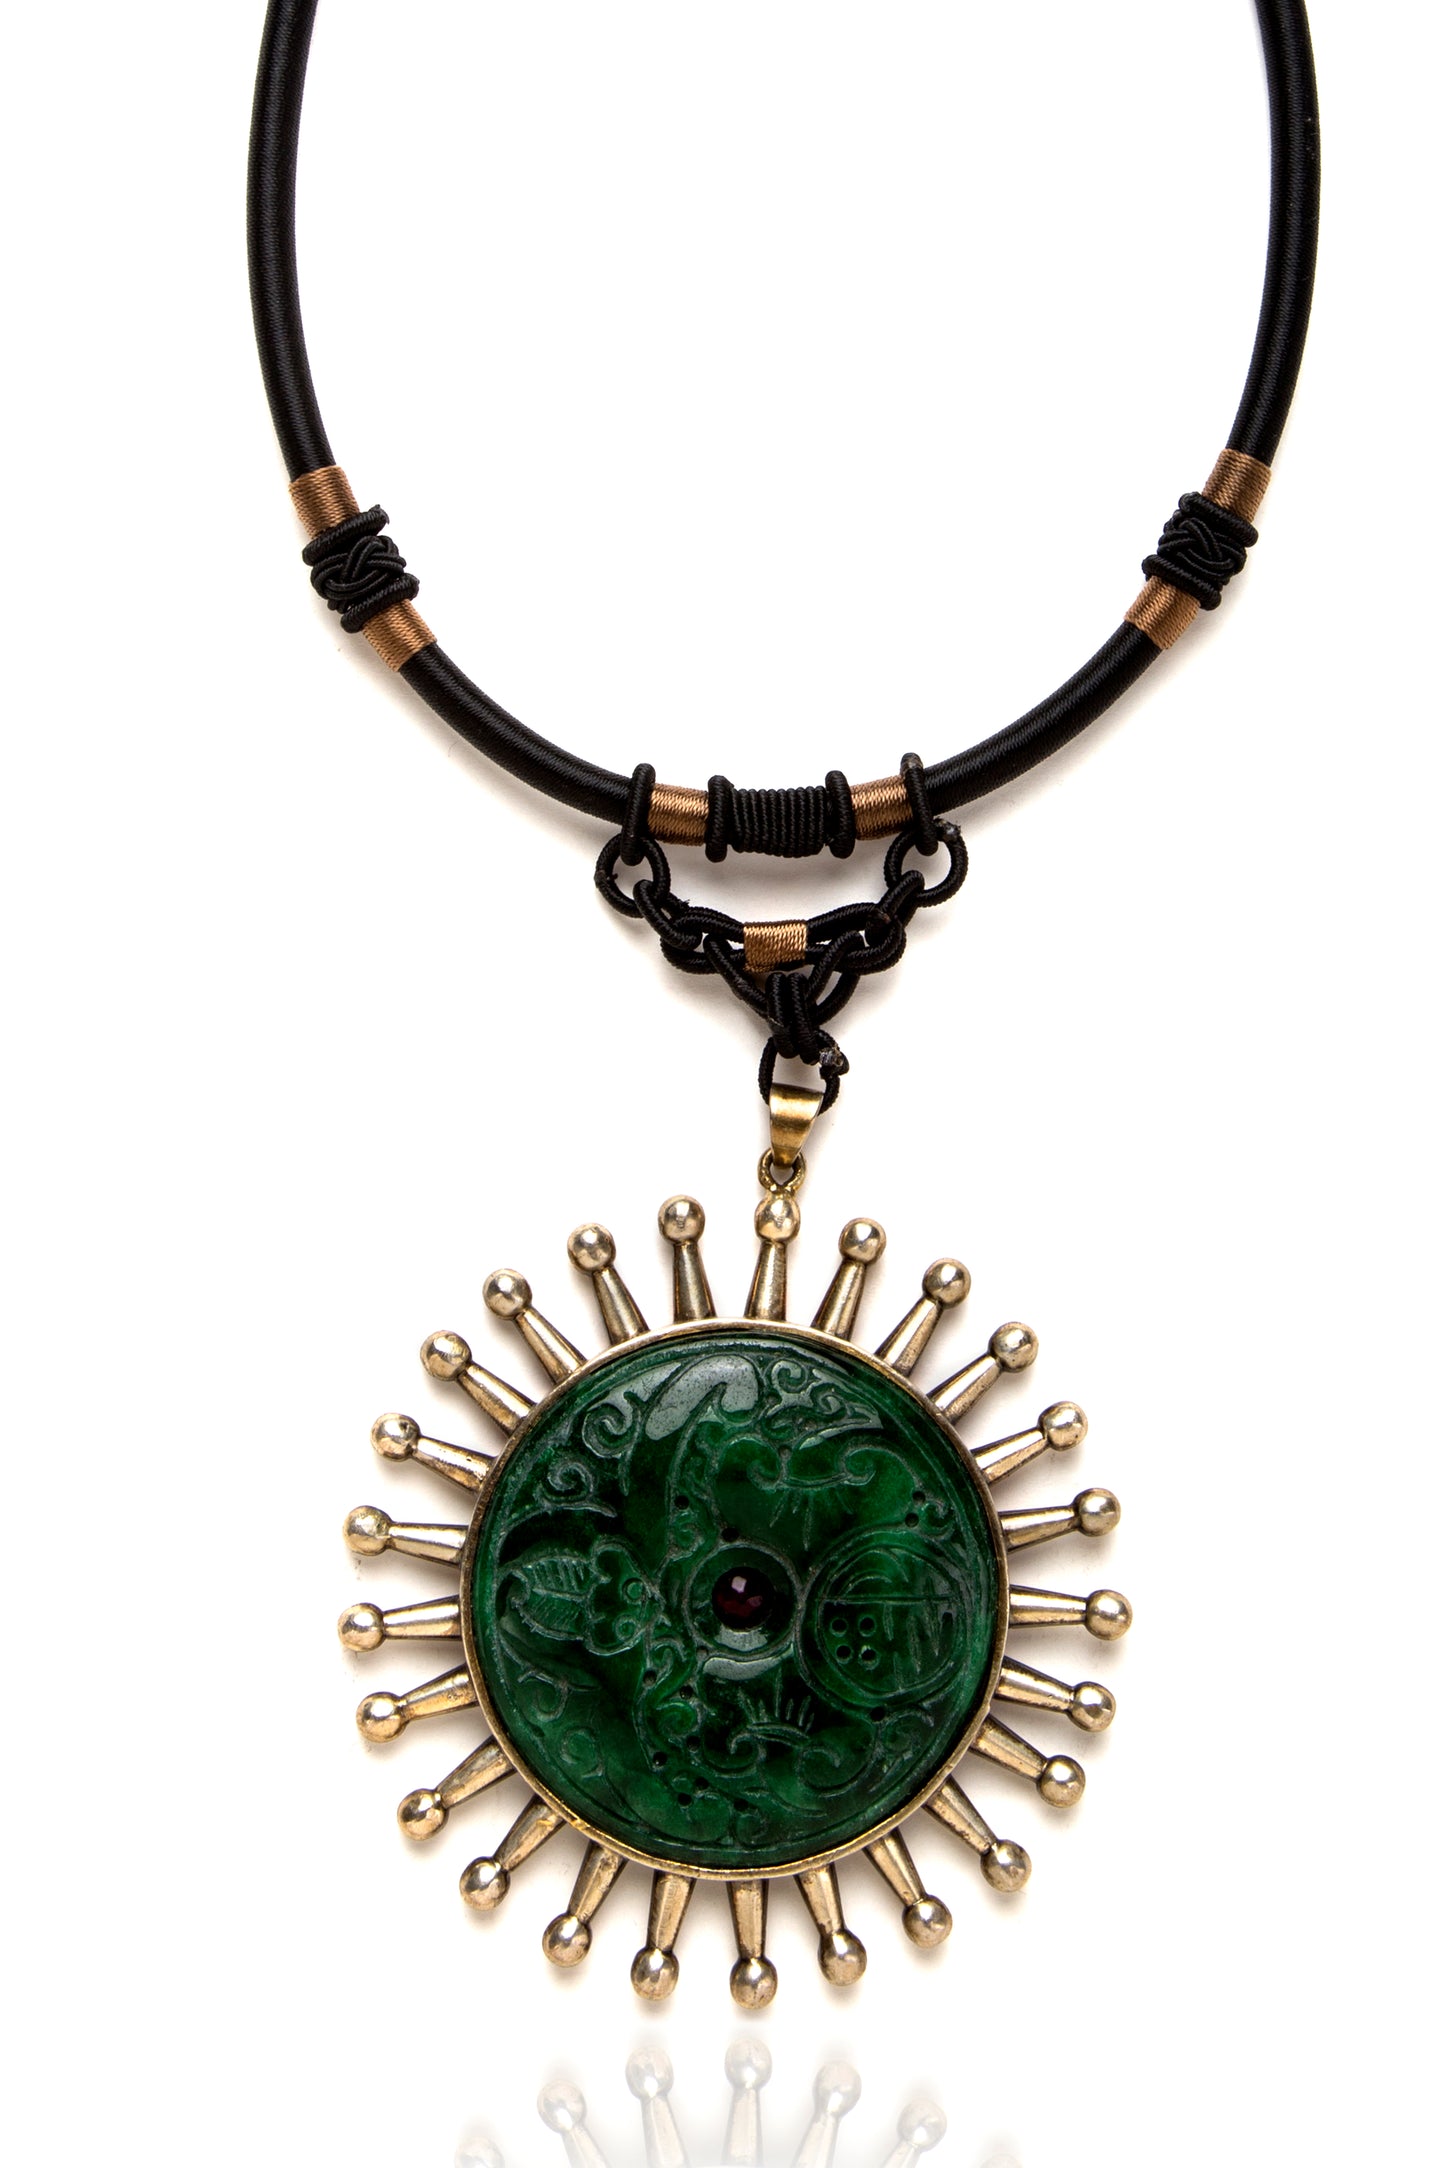 Jade & silver cord necklace